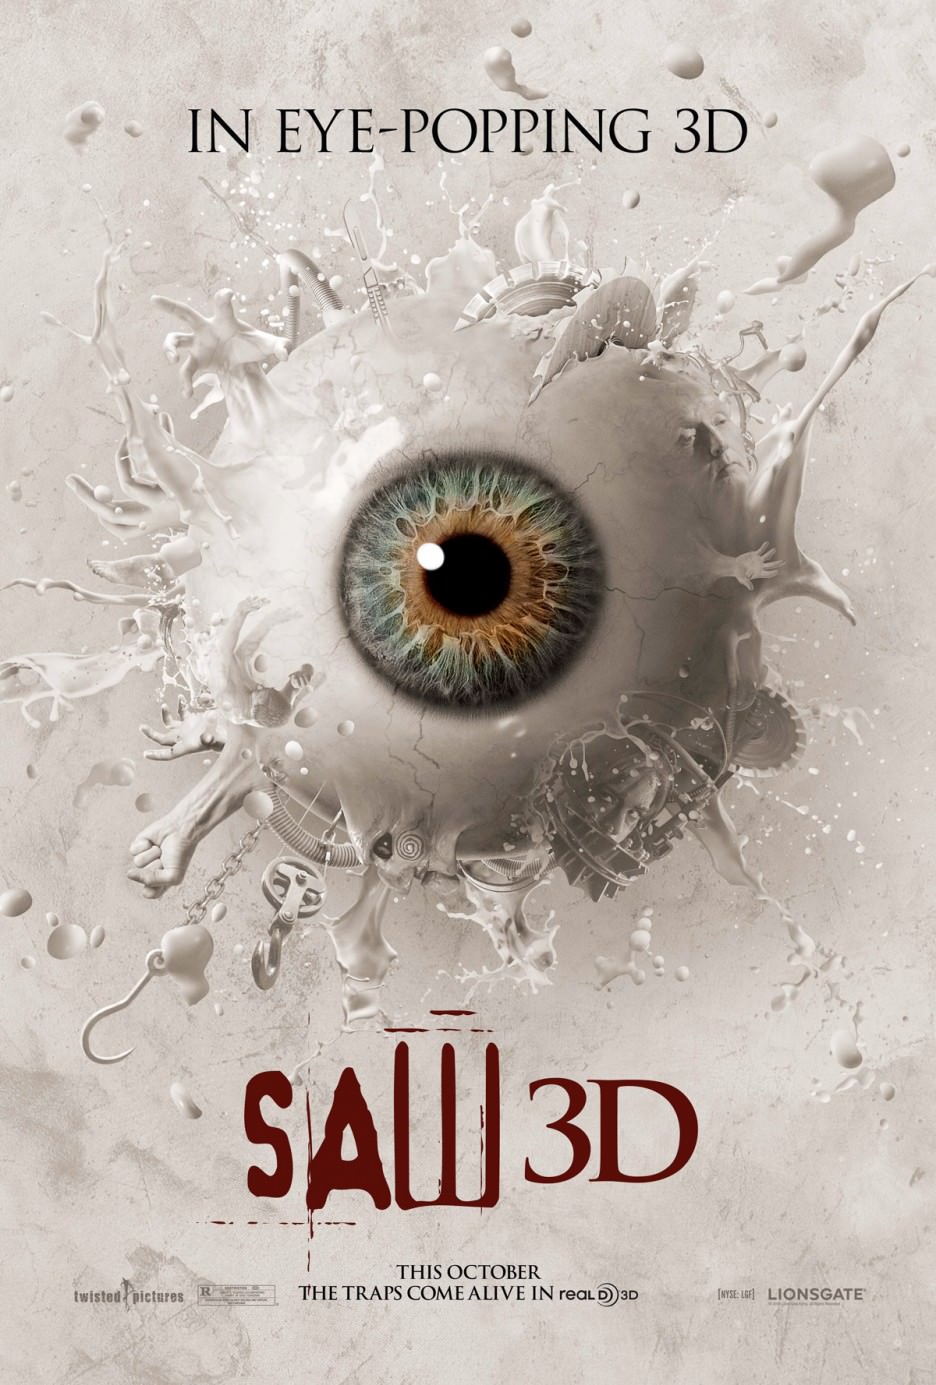 Movie, Saw 3D(美國, 2010年) / 奪魂鋸3D(台灣) / 恐懼鬥室3D：終極審判(香港) / 电锯惊魂7(網路), 電影海報, 美國, RealD 3D